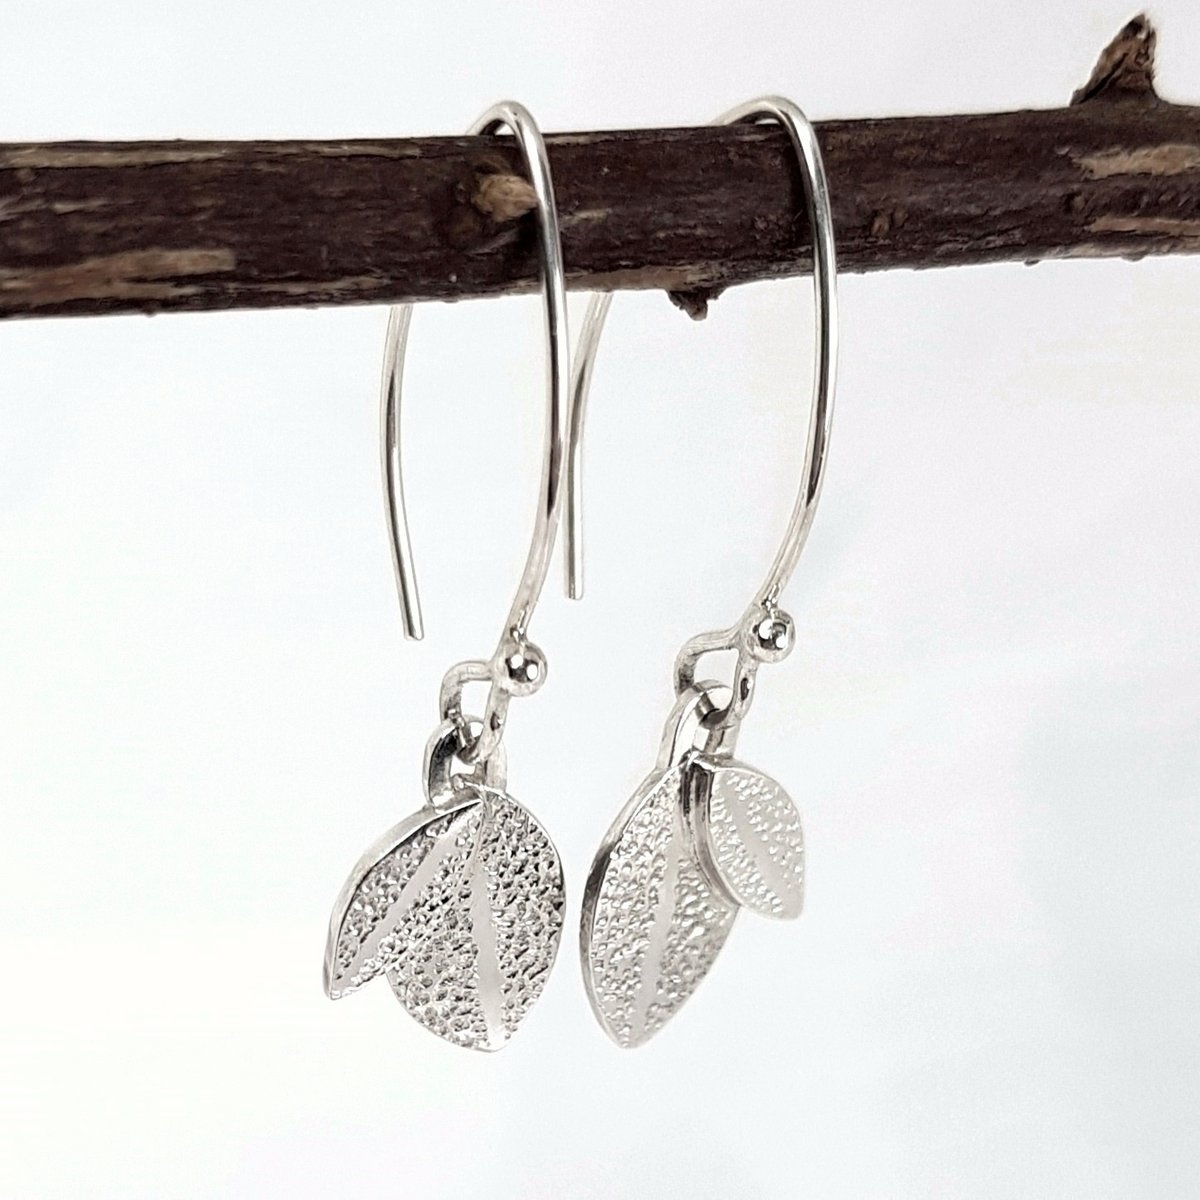 Image of Silver Leaf Earrings, Sterling Silver Dangle Earrings